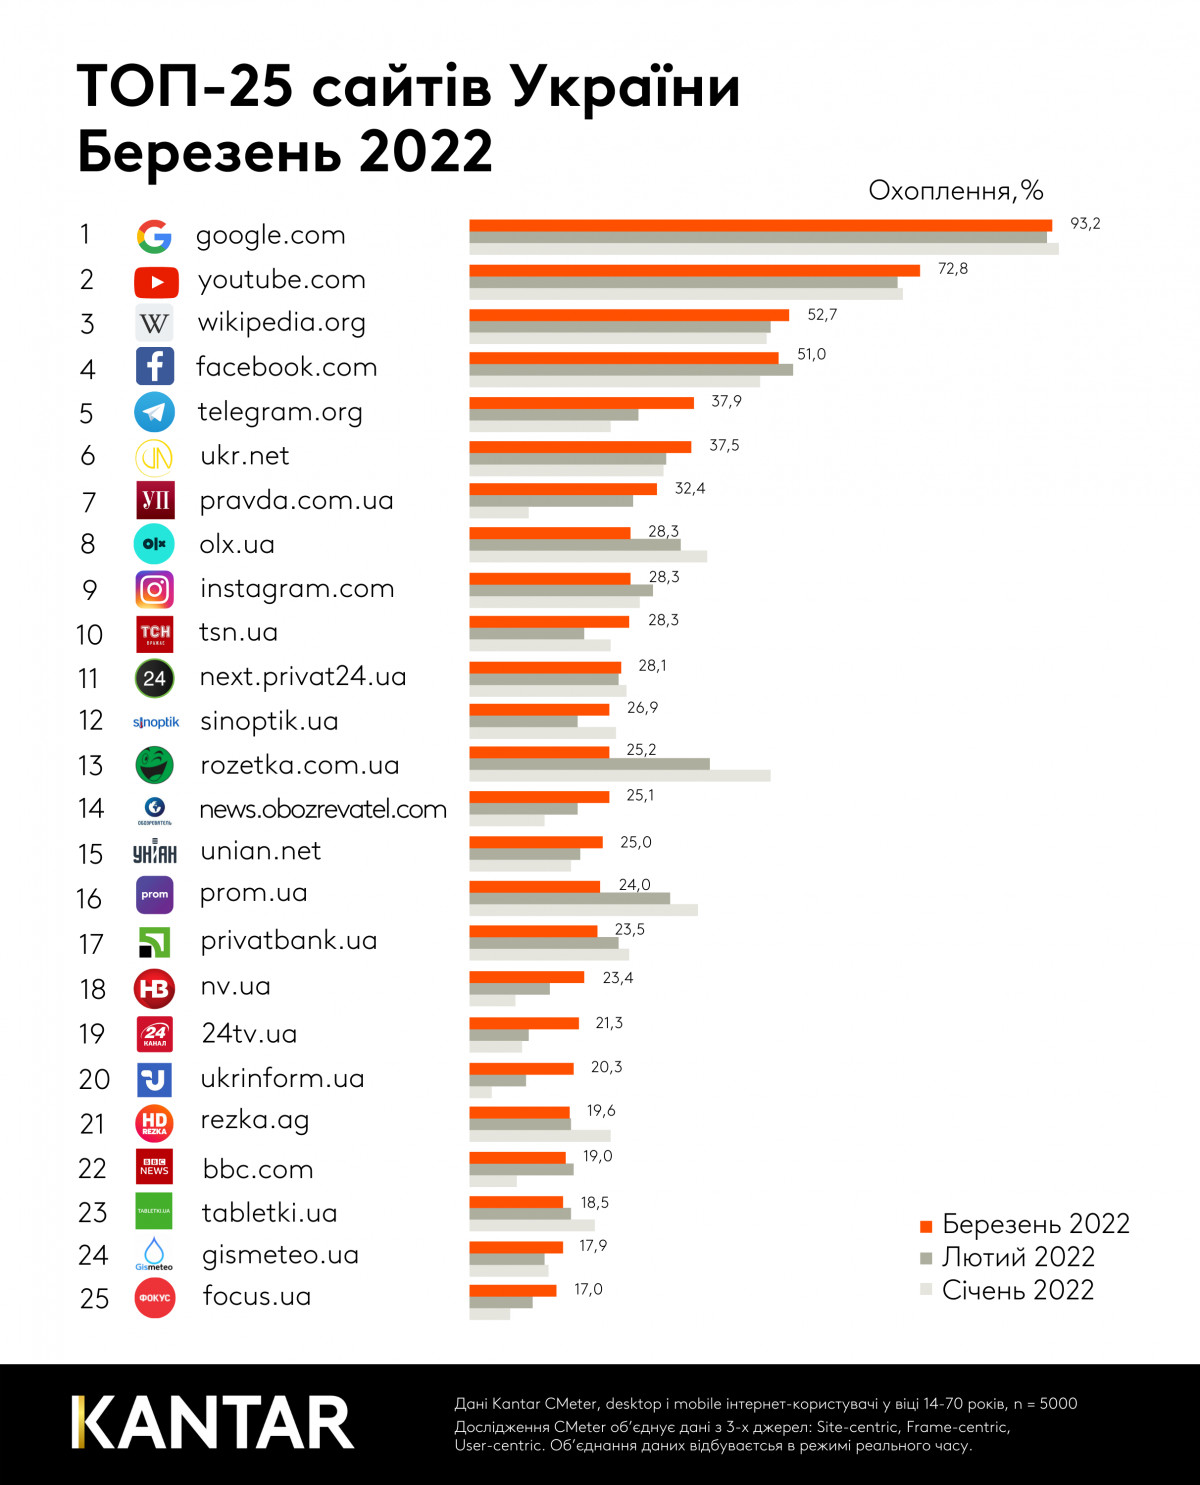 Kantar: В марте в рейтинг самых популярных в Украине сайтов вошло 9 изданий